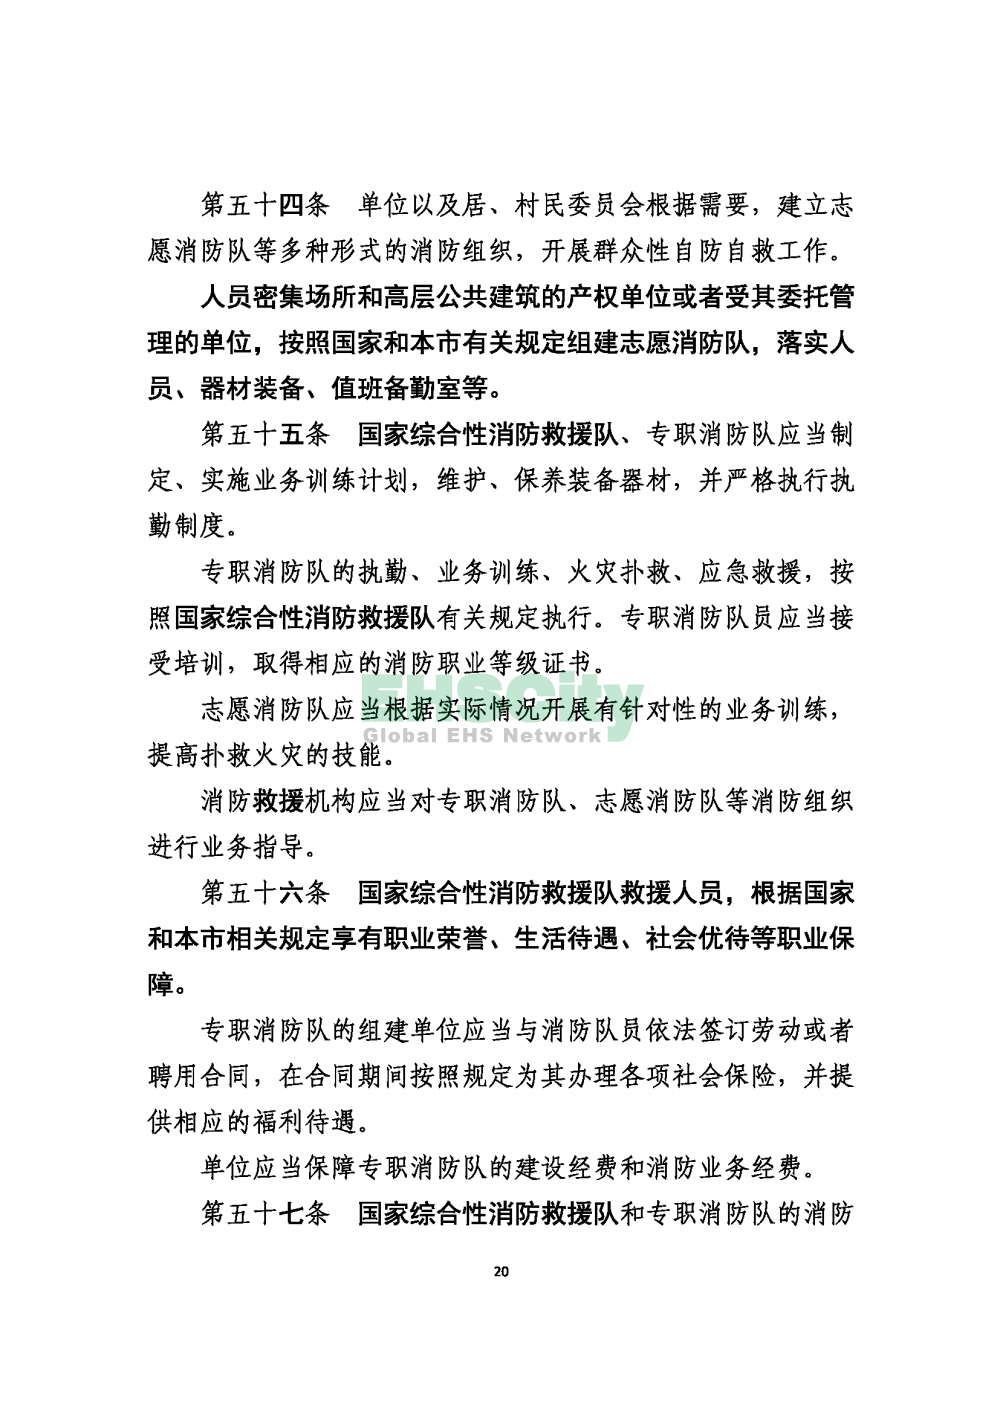 2020版上海消防条例_页面_20